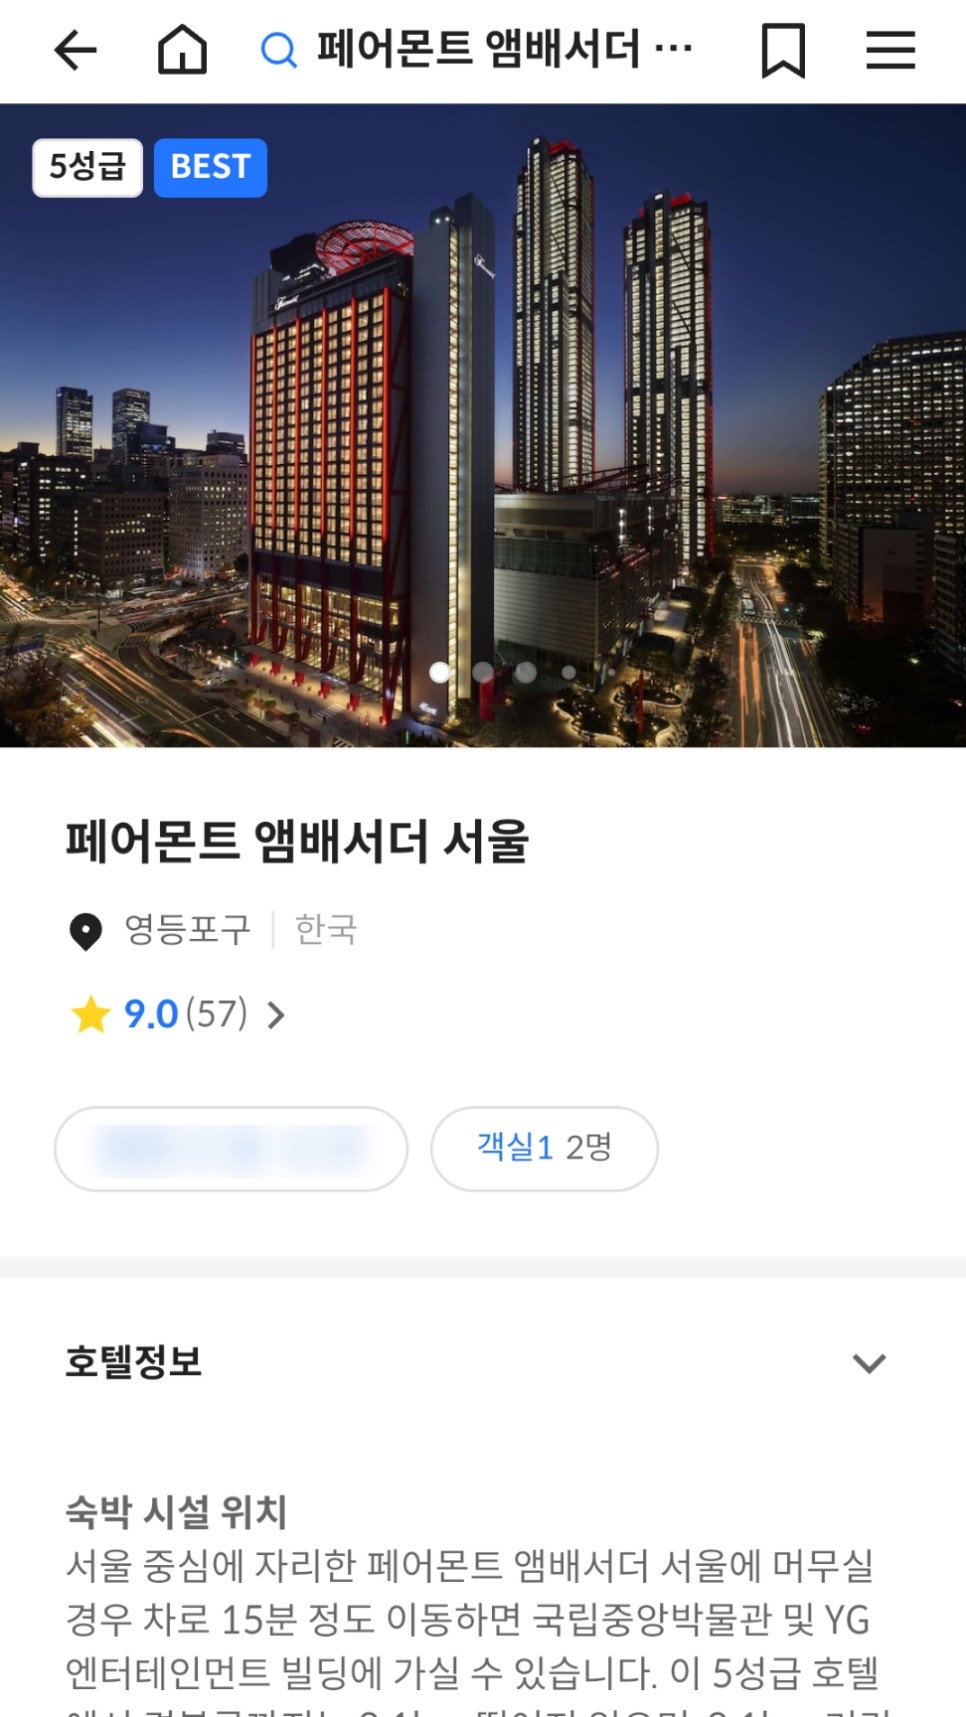 서울호캉스추천 페어몬트 여의도 호텔 조식 수영장까지 굿!